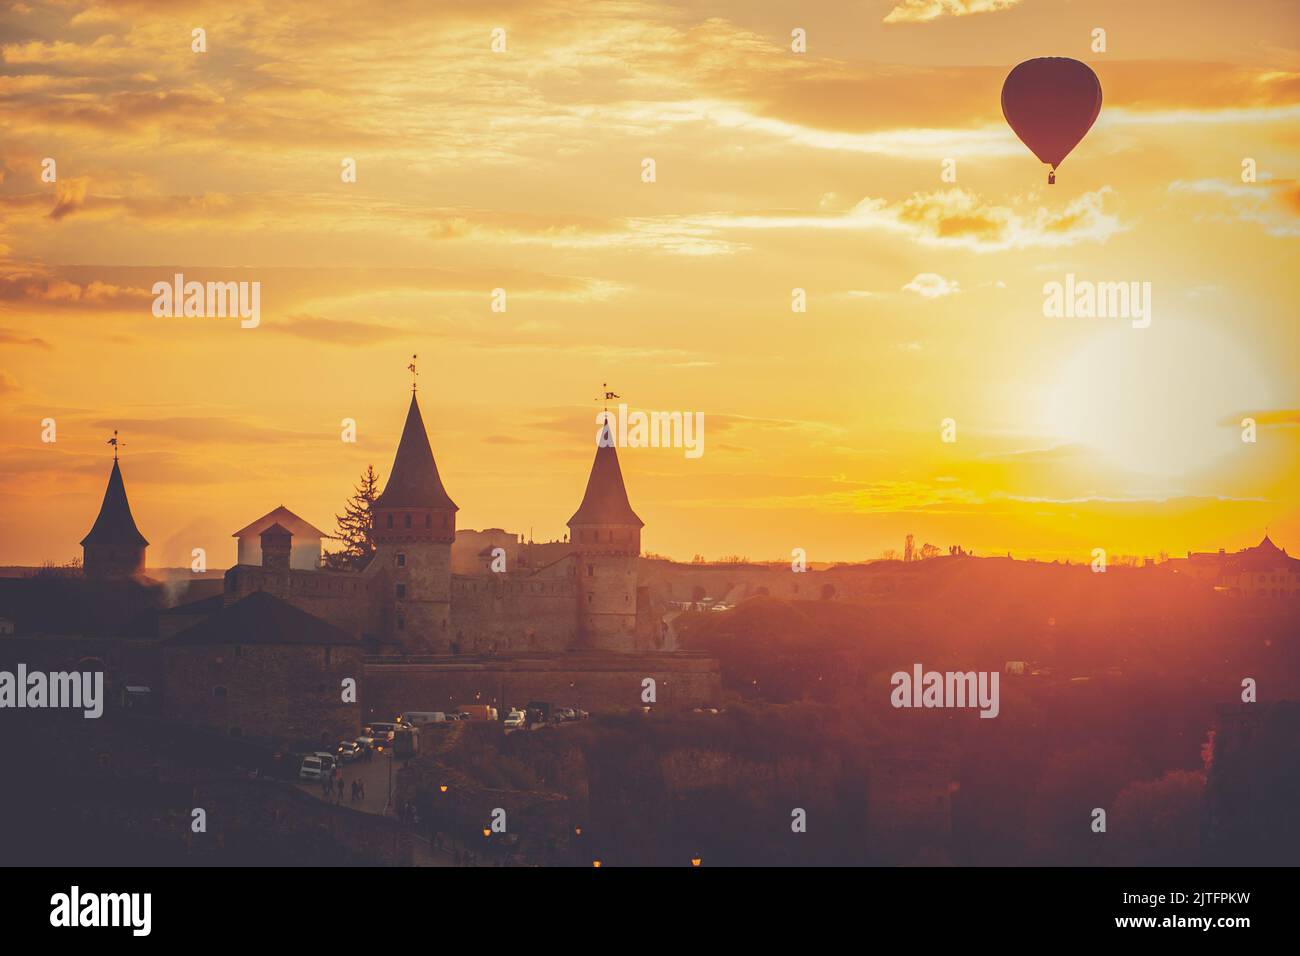 Strahlend orangefarbener Sonnenuntergang über der Burg Kamianets-Podilskyi. Ein Heißluftballon stellt sich vor dem goldenen Himmel und beobachtet das Stadtbild der Altstadt am Abend. Reisehintergrund. Beliebtes Touristenziel Stockfoto